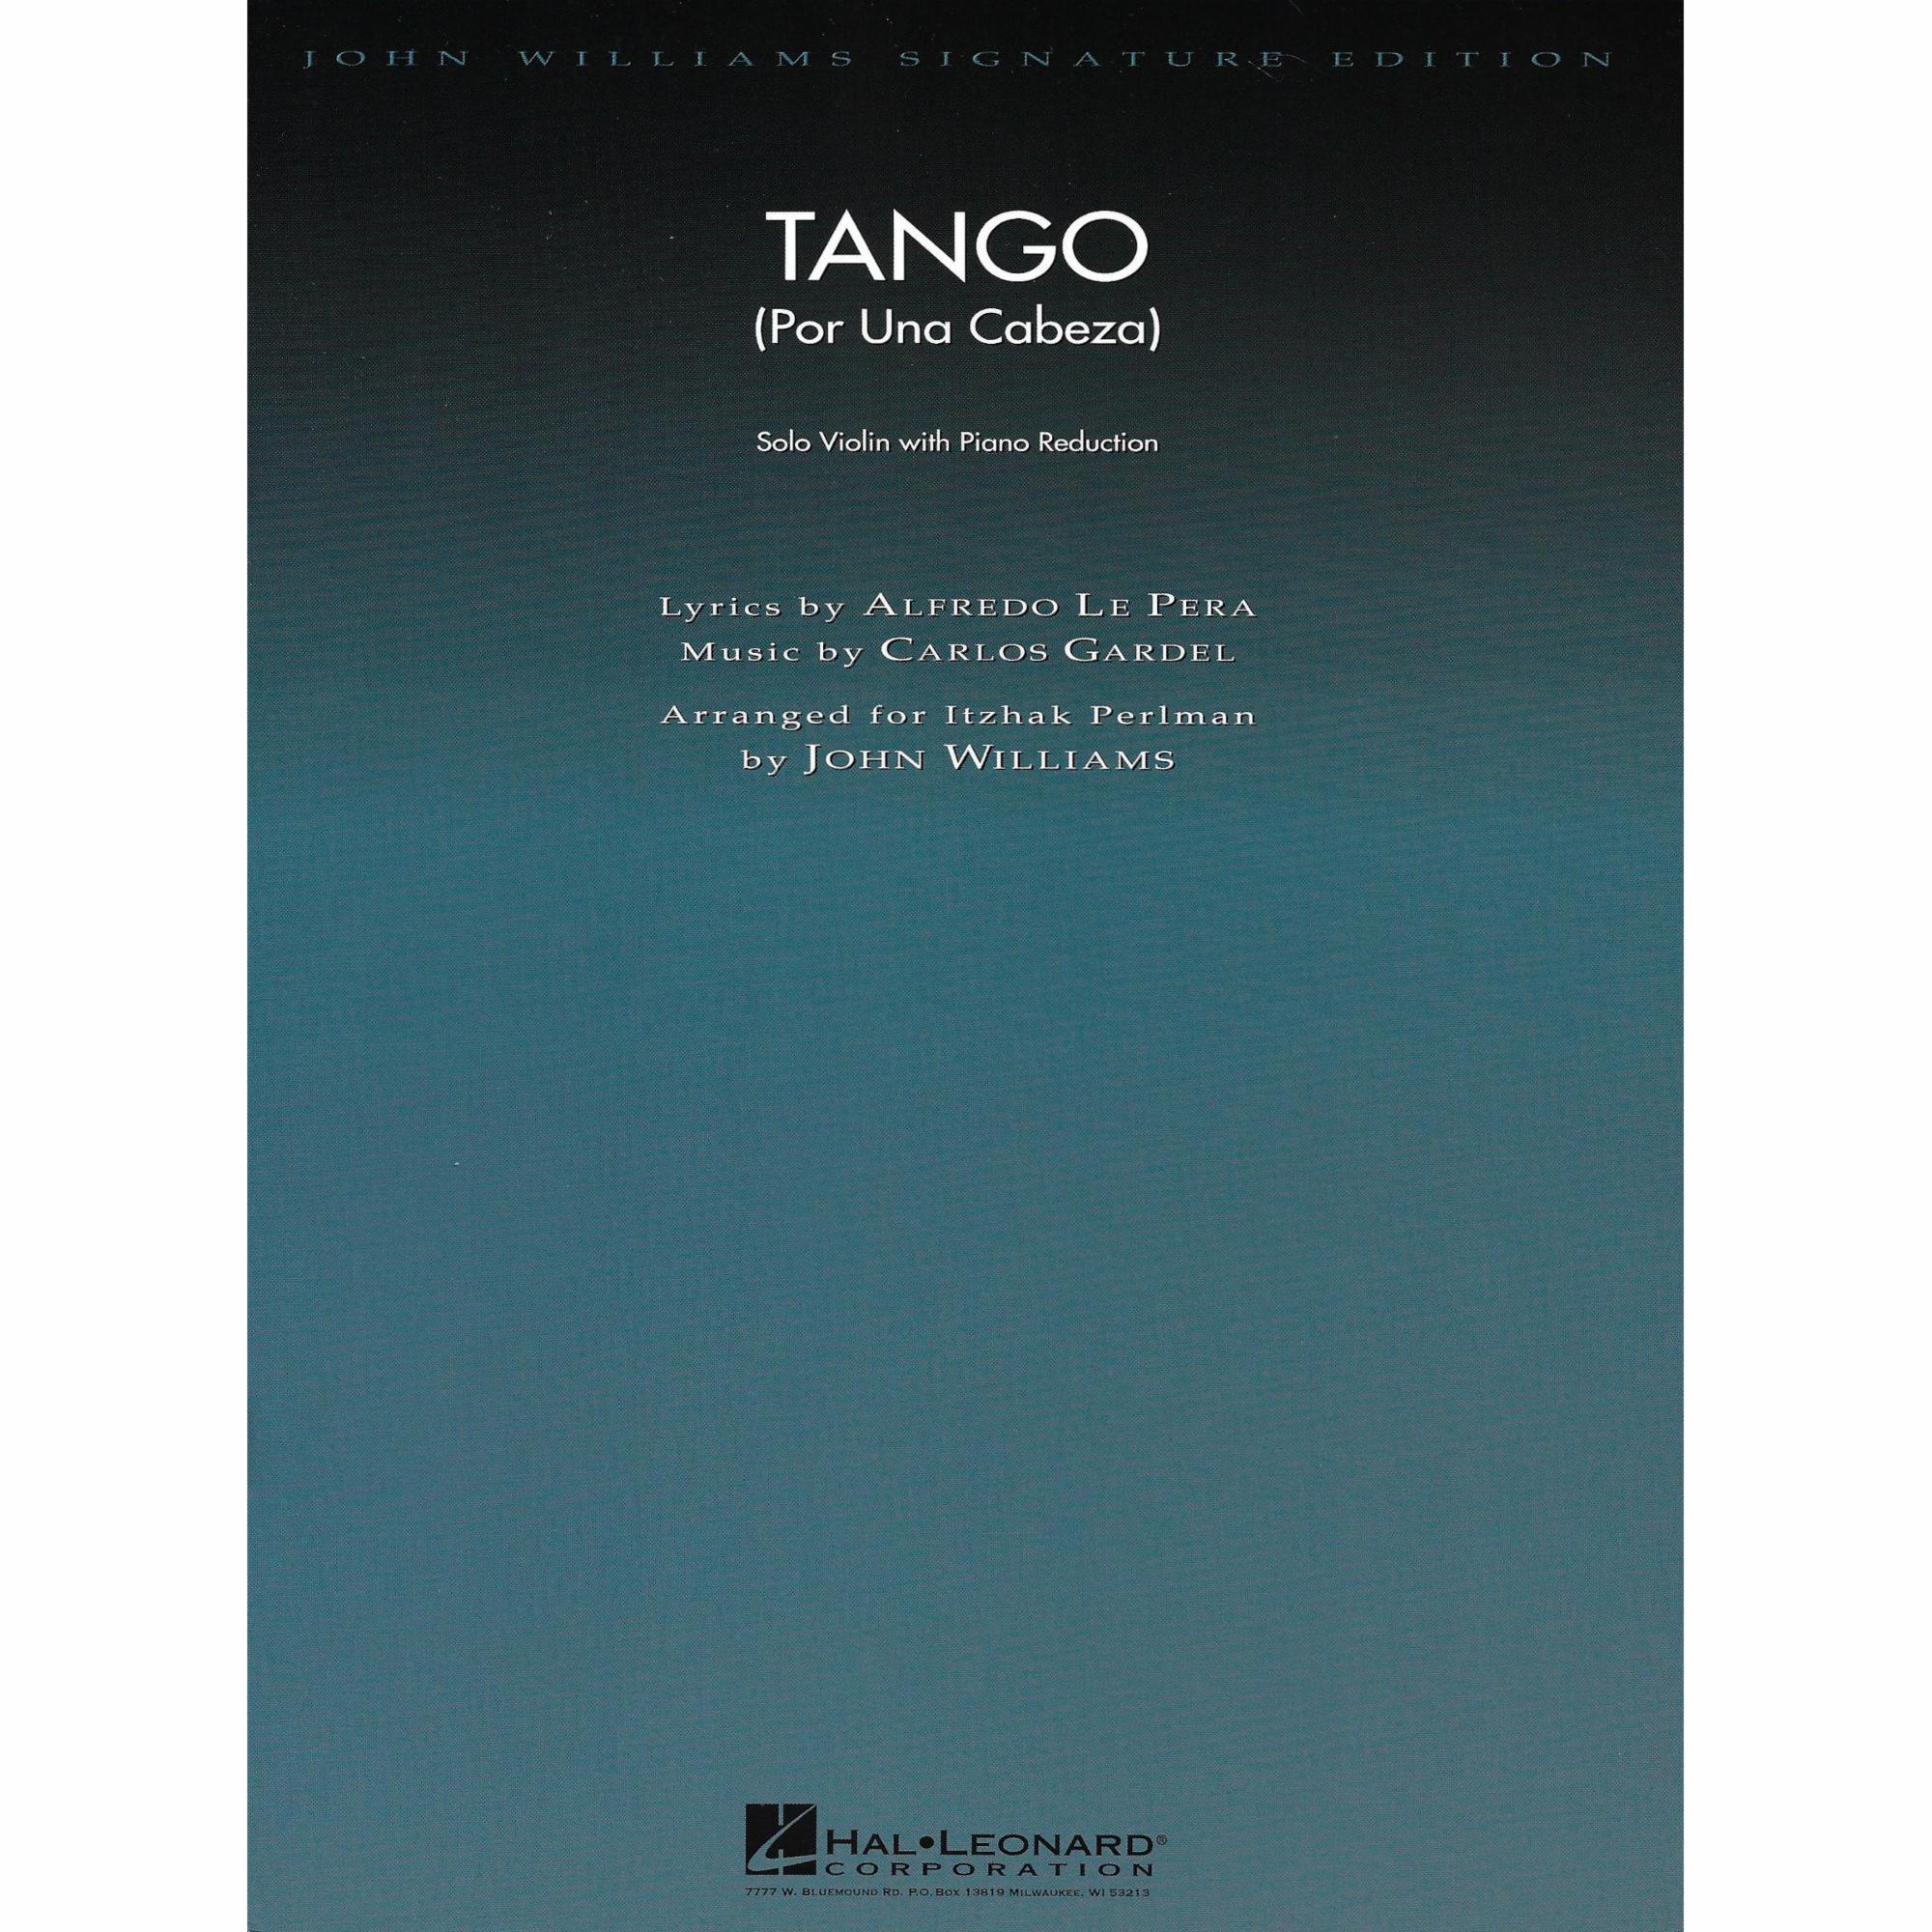 Tango (Por una Cabeza) for Violin and Piano